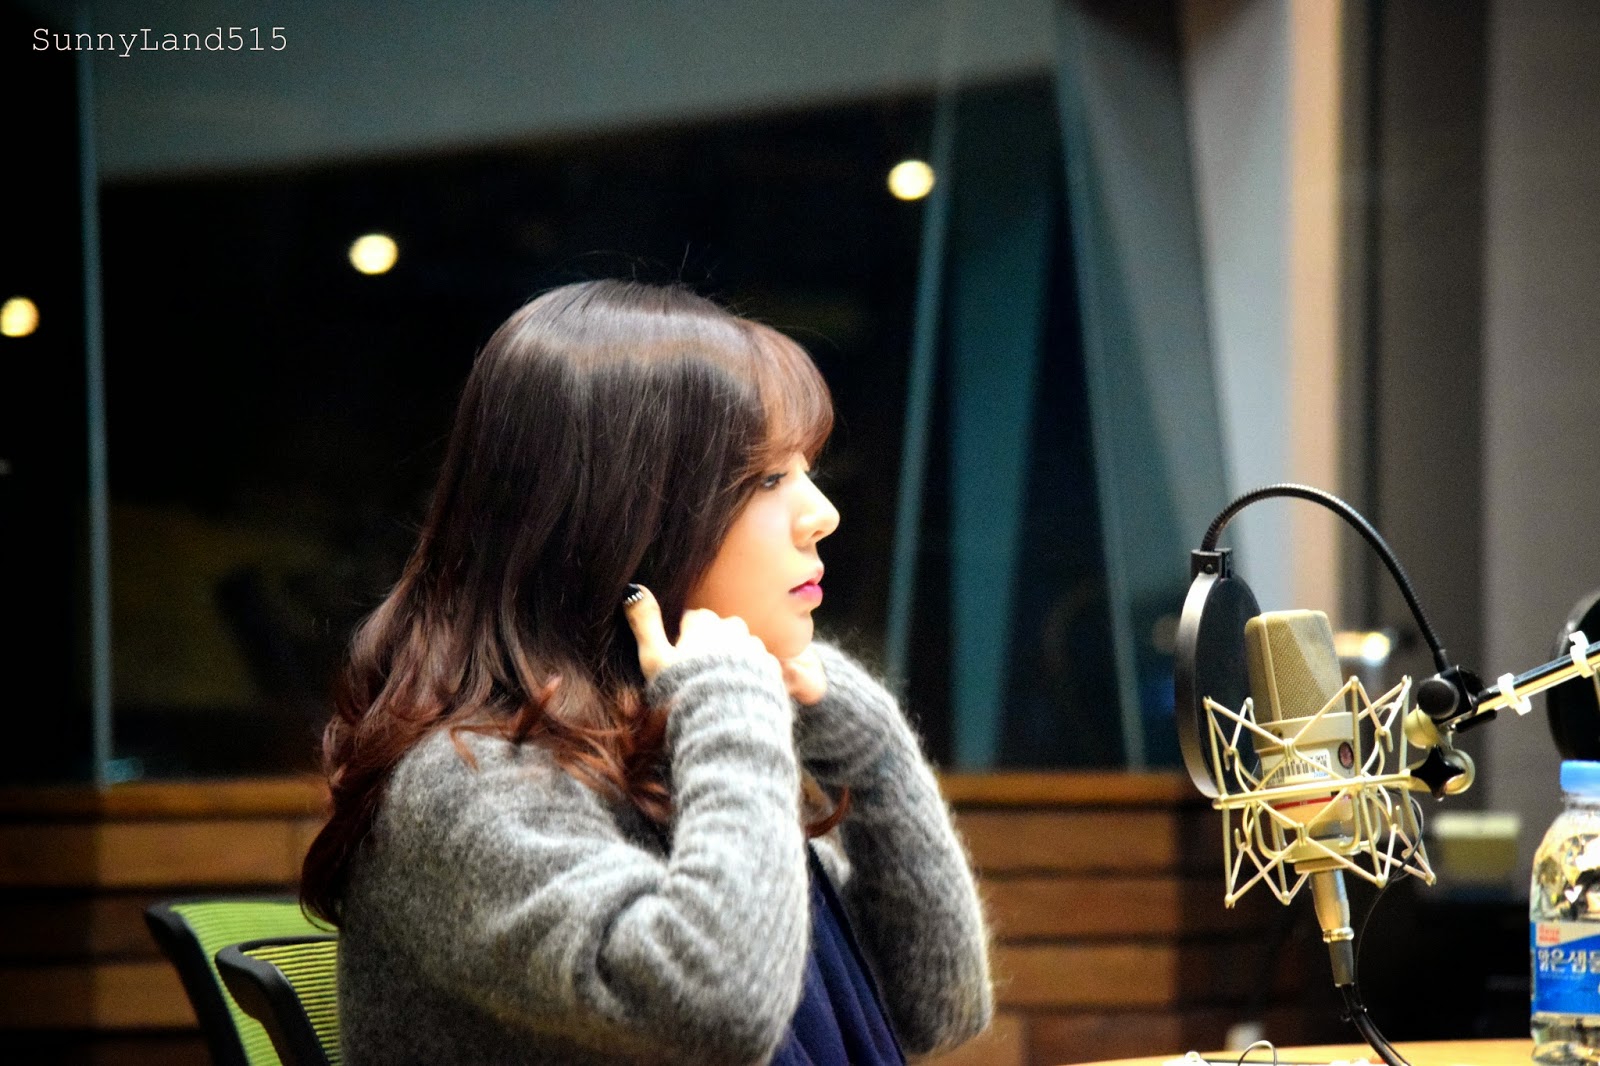 [OTHER][06-02-2015]Hình ảnh mới nhất từ DJ Sunny tại Radio MBC FM4U - "FM Date" - Page 10 DSC_0020_Fotor